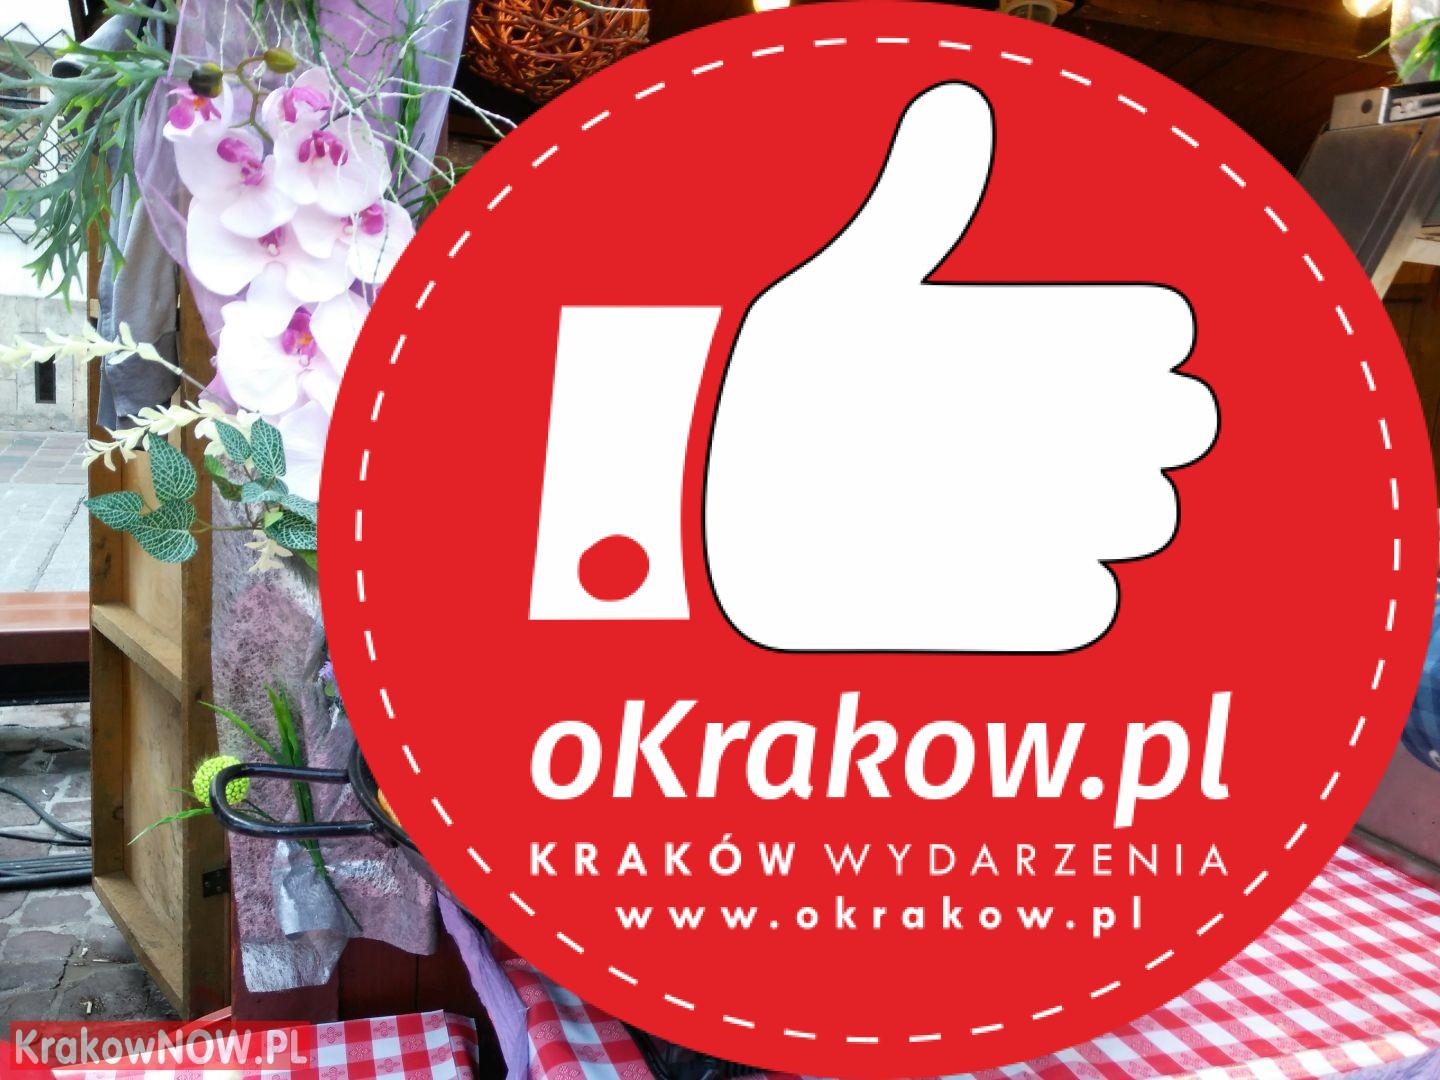 festiwal pierogow krakow maly rynek 22 1 - Od 11 do 15 sierpnia XIV Festiwal Pierogów na Małym Rynku w Krakowie